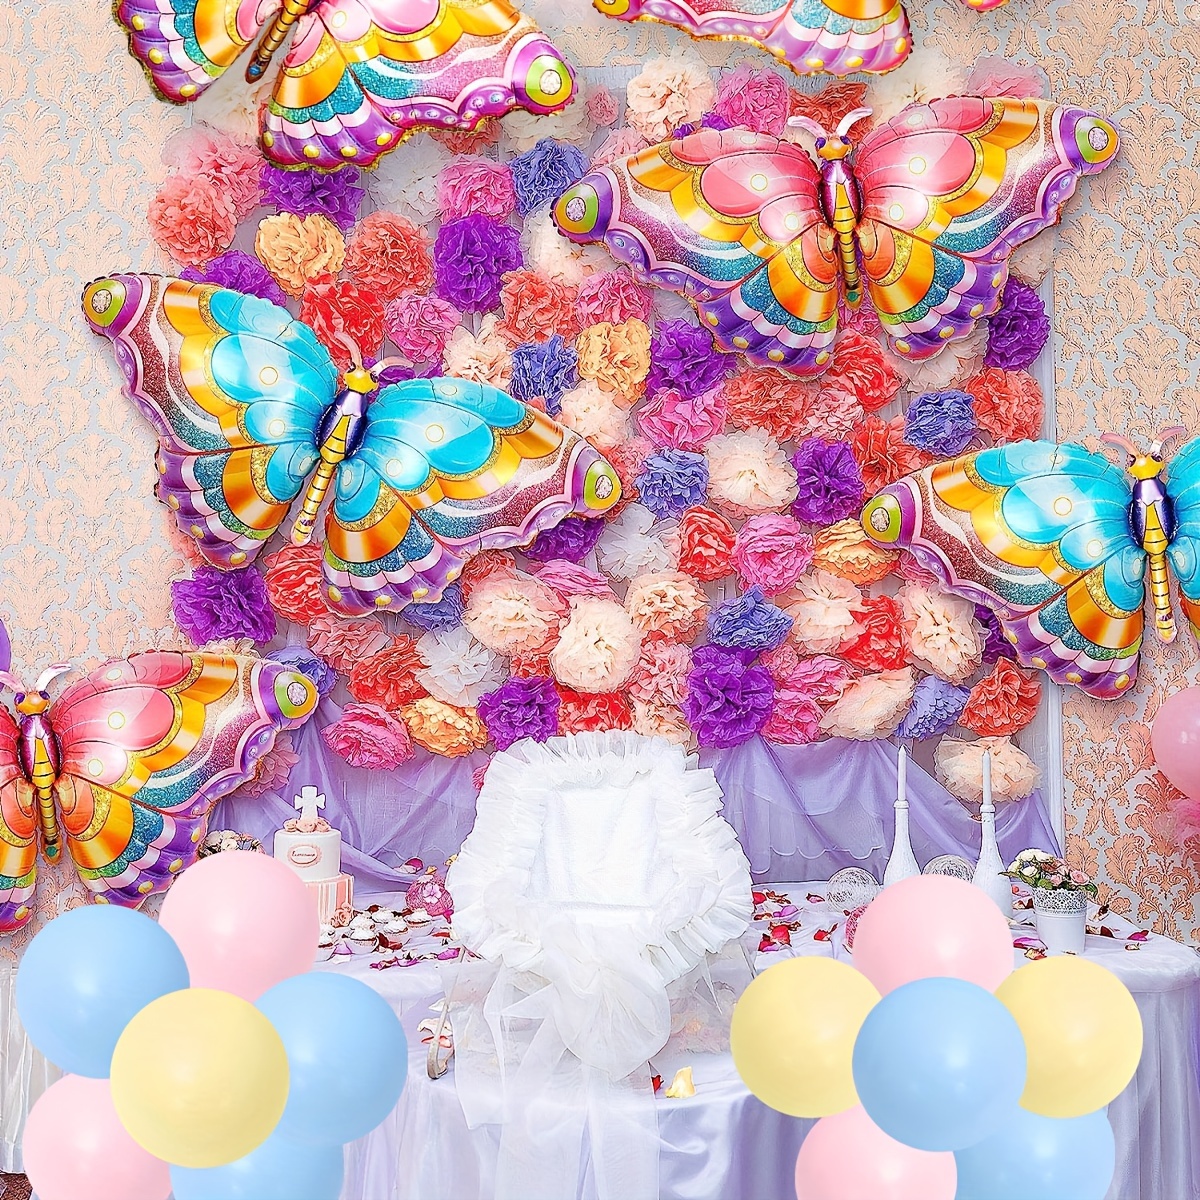  Globos de decoración de fiesta de princesa de hadas para fiesta  de cumpleaños, Decoración perfecta de globos de helio con temática de  hadas florales del país de las maravillas